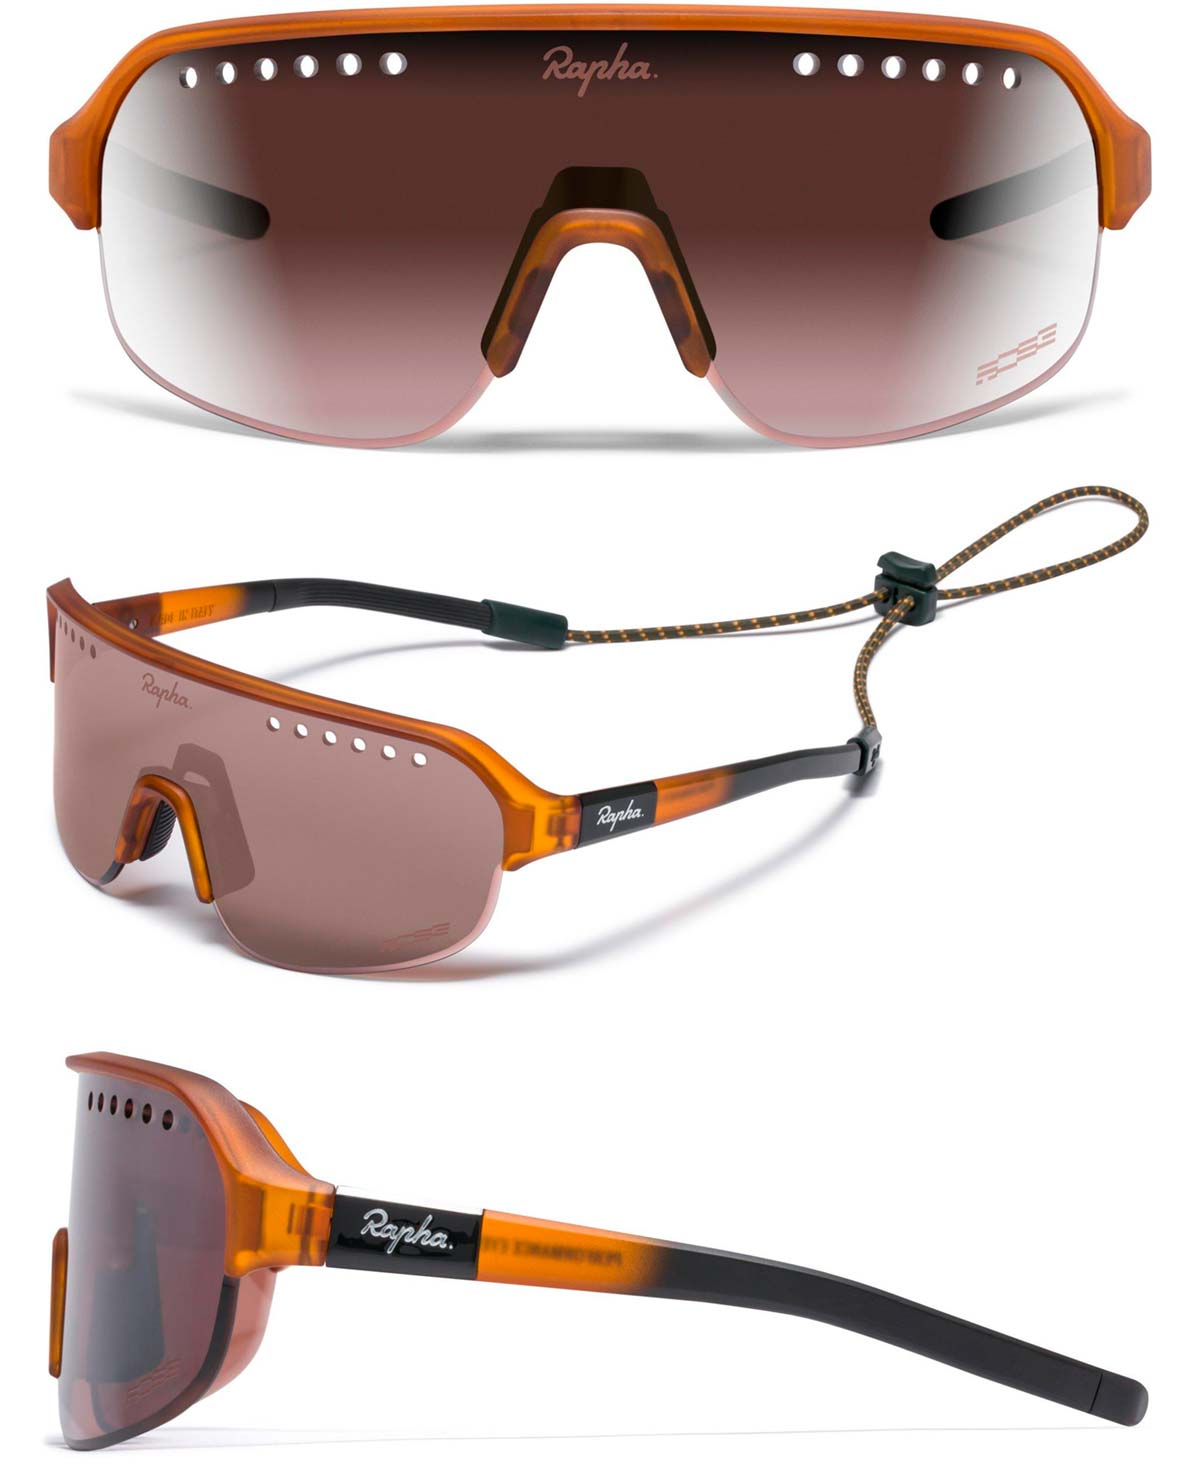 En TodoMountainBike: Rapha lanza una completa gama de gafas, tres de ciclismo y una más de uso casual